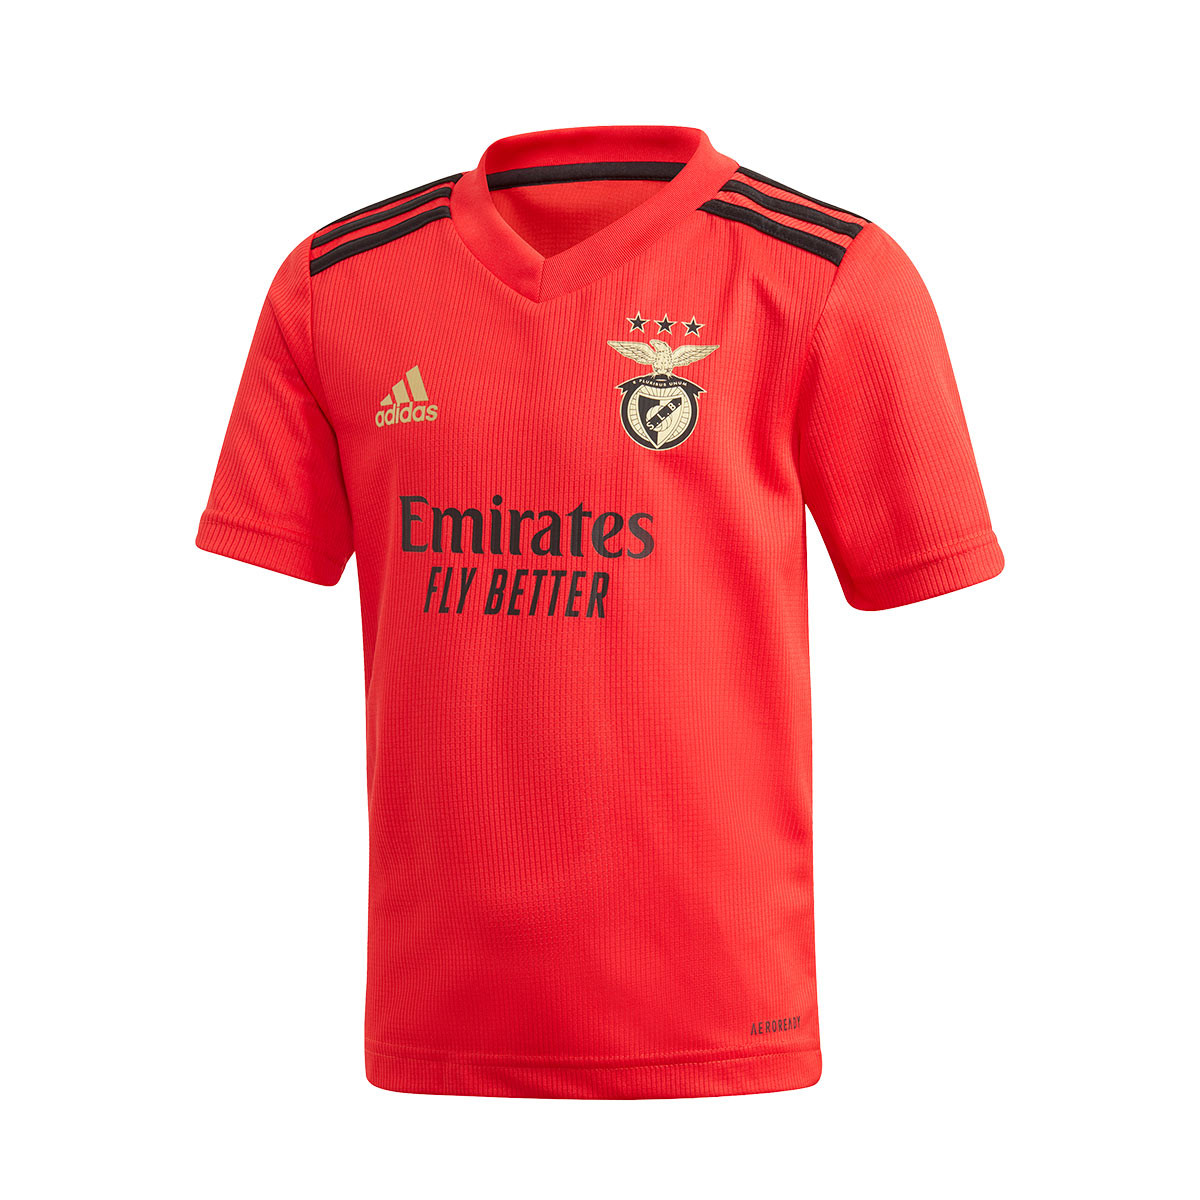 Kit adidas Kids SL Benfica Home Kit 2020-2021 Benfica red ...